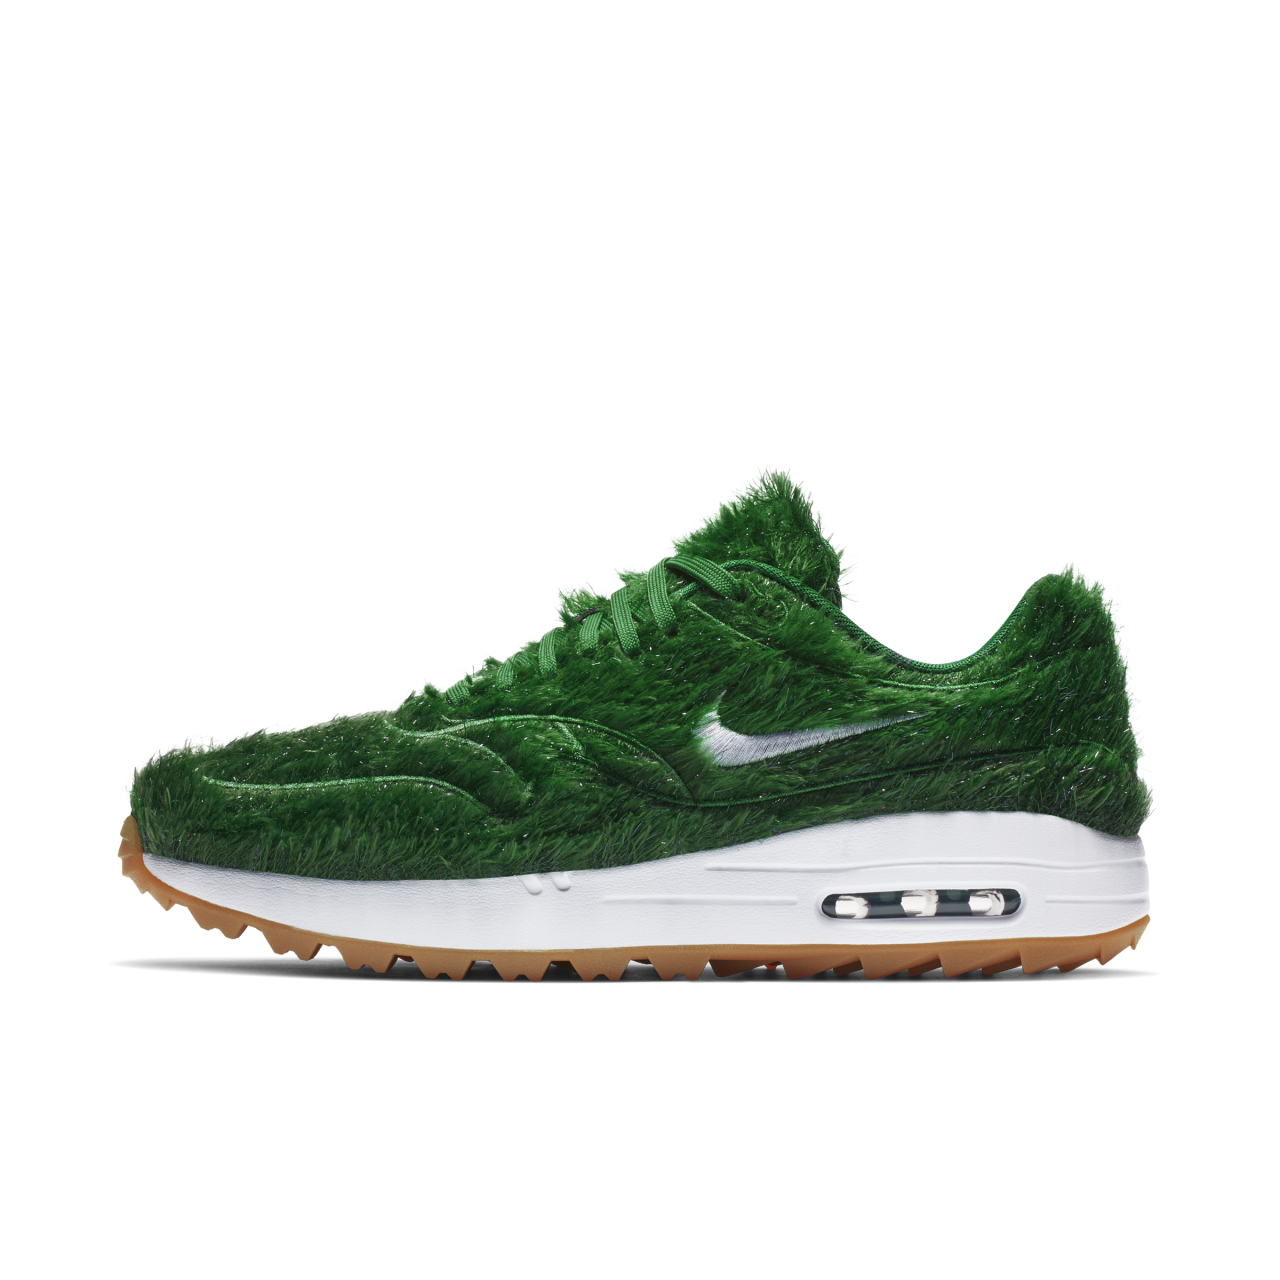 air max golf grass shoes